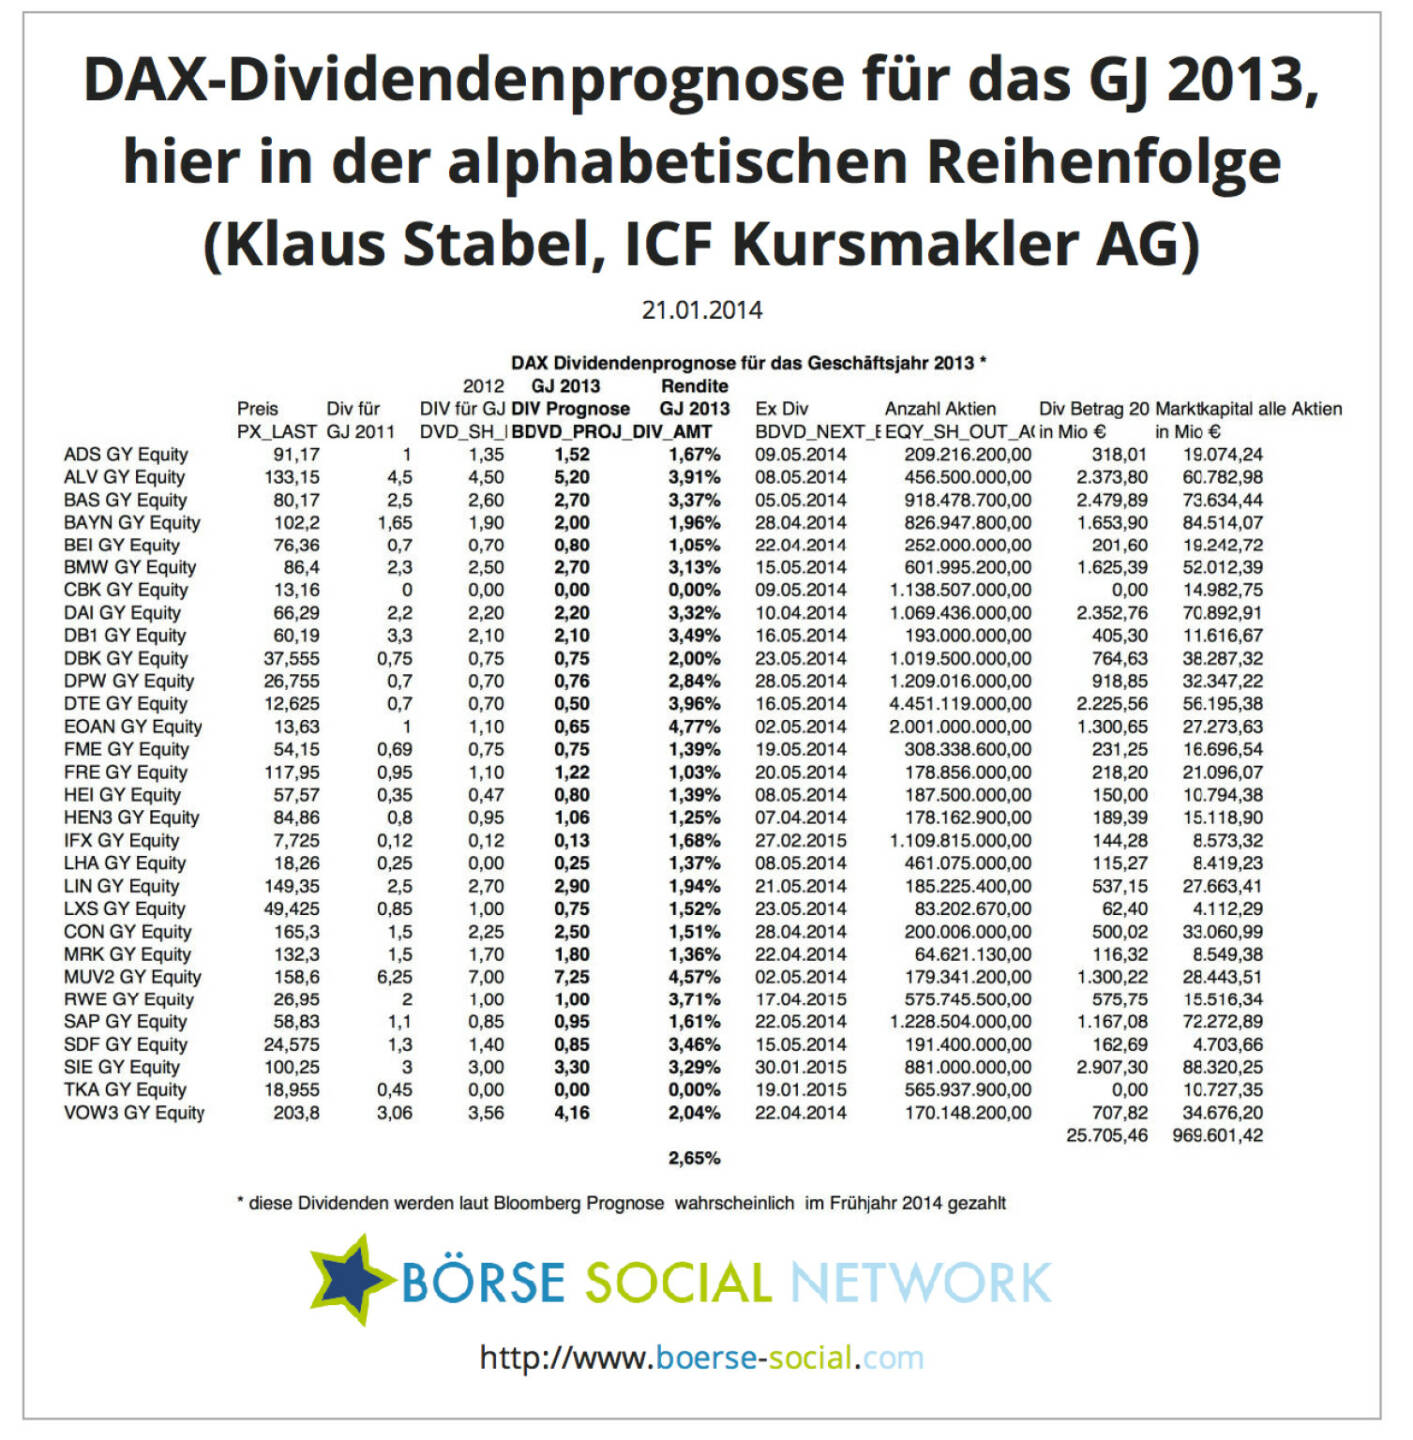 Klaus Stabel, Diplom-Ökonom Head of Research ICF Kursmakler AG: In den beigefügten Tabellen werden die von Bloomberg prognostizierten Dividenden für die DAX Werte sortiert. Außerdem wird die Anzahl der ausstehenden Aktien mit der erwarteten Dividende multipliziert, um die Gesamtausschüttung aller DAX Unternehmen zu quantifizieren.Bei dem aktuellen Kursniveau rentieren die DAX Werte im Durchschnitt  mit 2,65%.Bei den genannten Terminen (ex div) handelt es sich jeweils um den Tag, an dem die erwarteten Dividenden gezahlt werden. (ICF, Bloomberg)
 
 